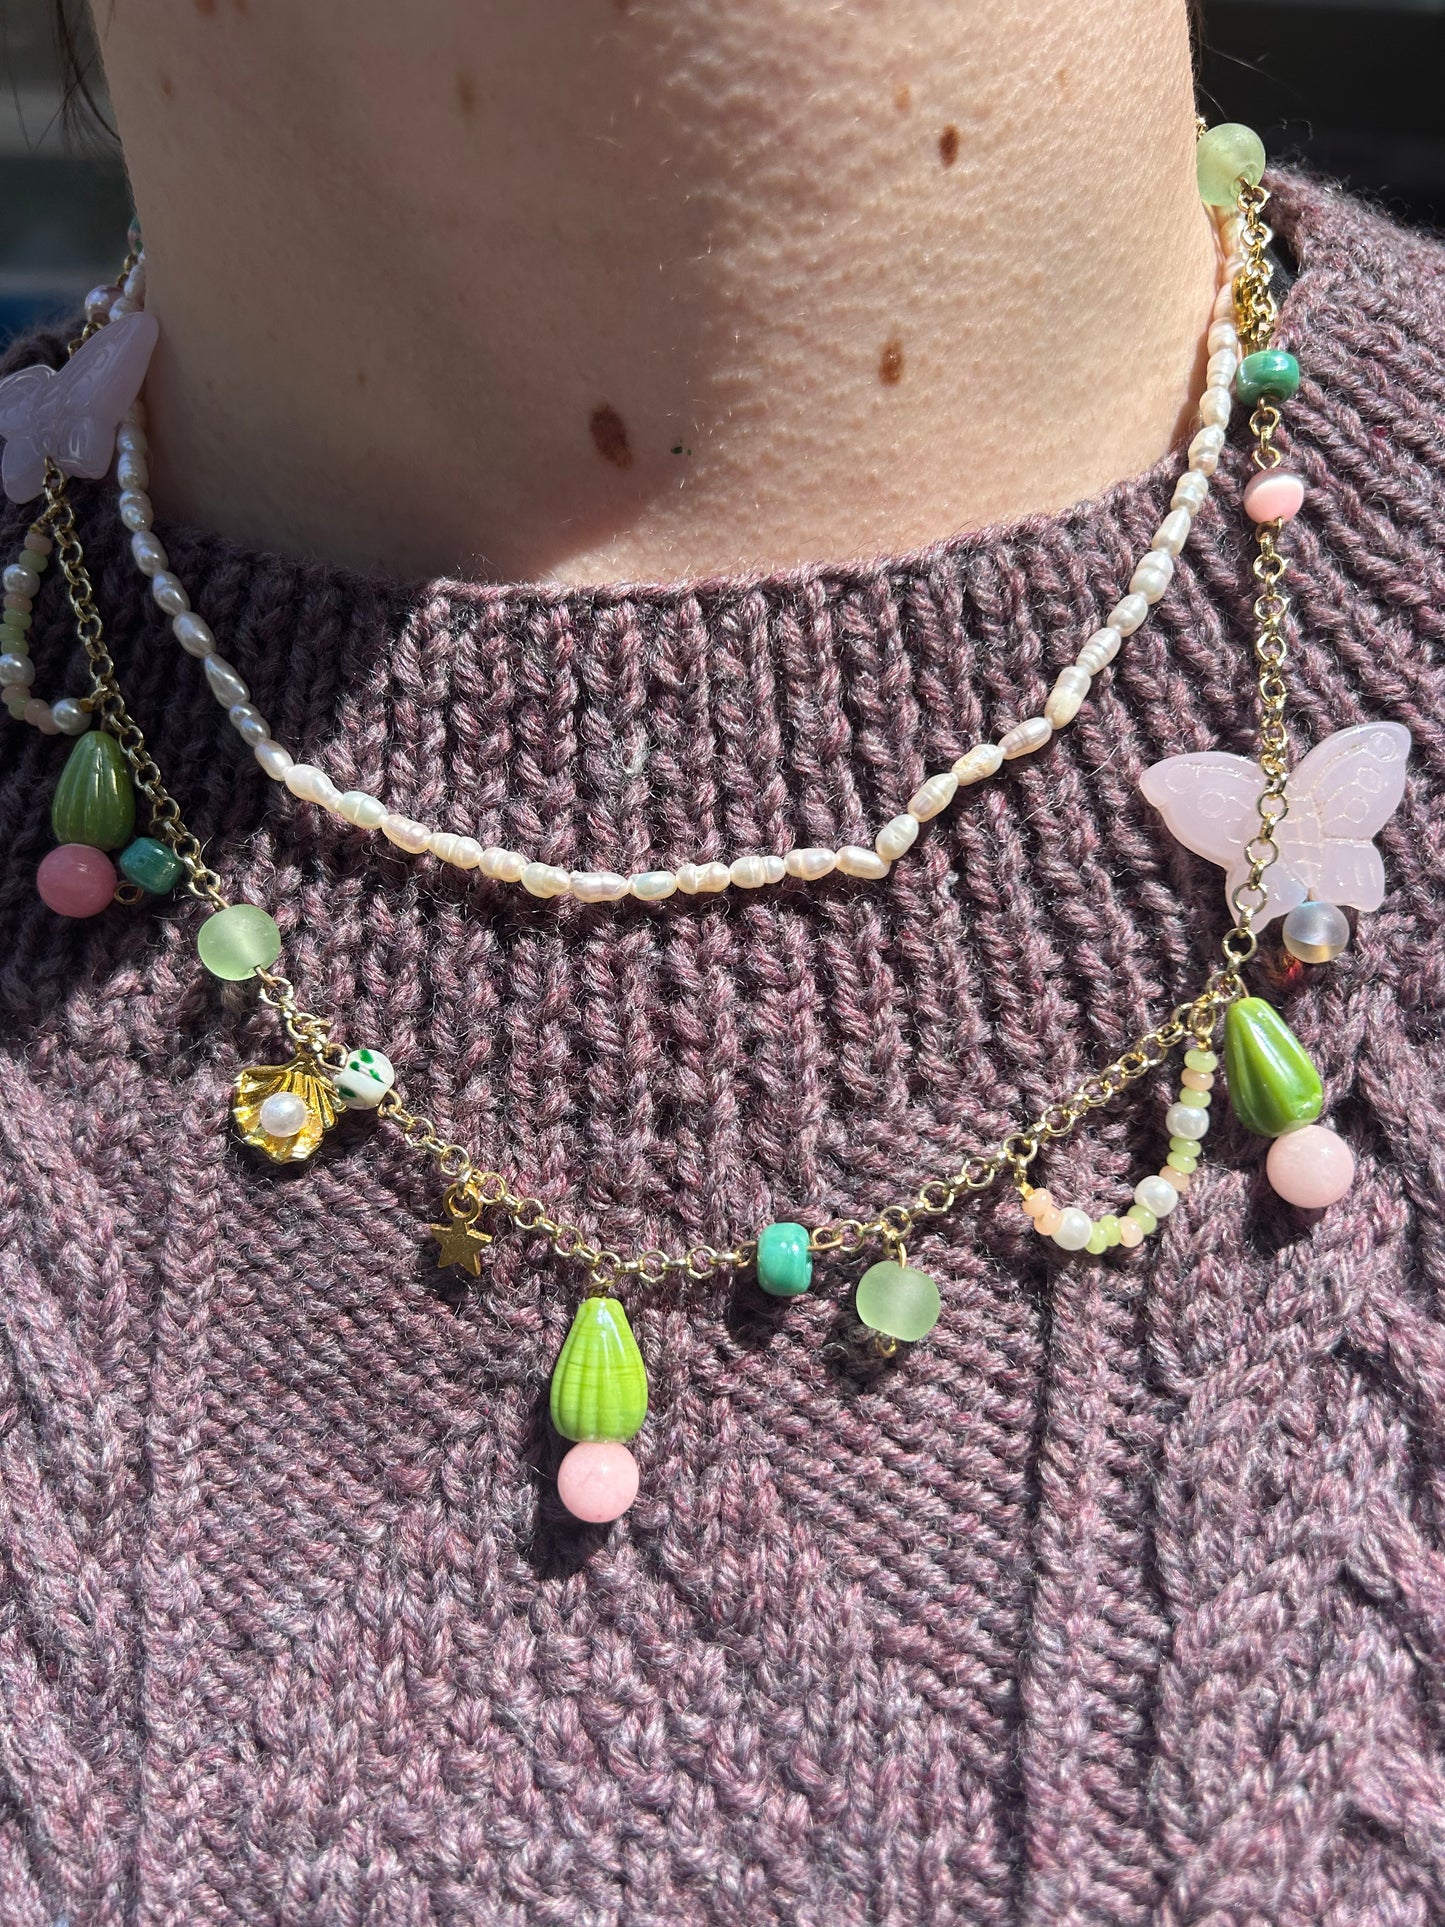 Fairy garden necklace